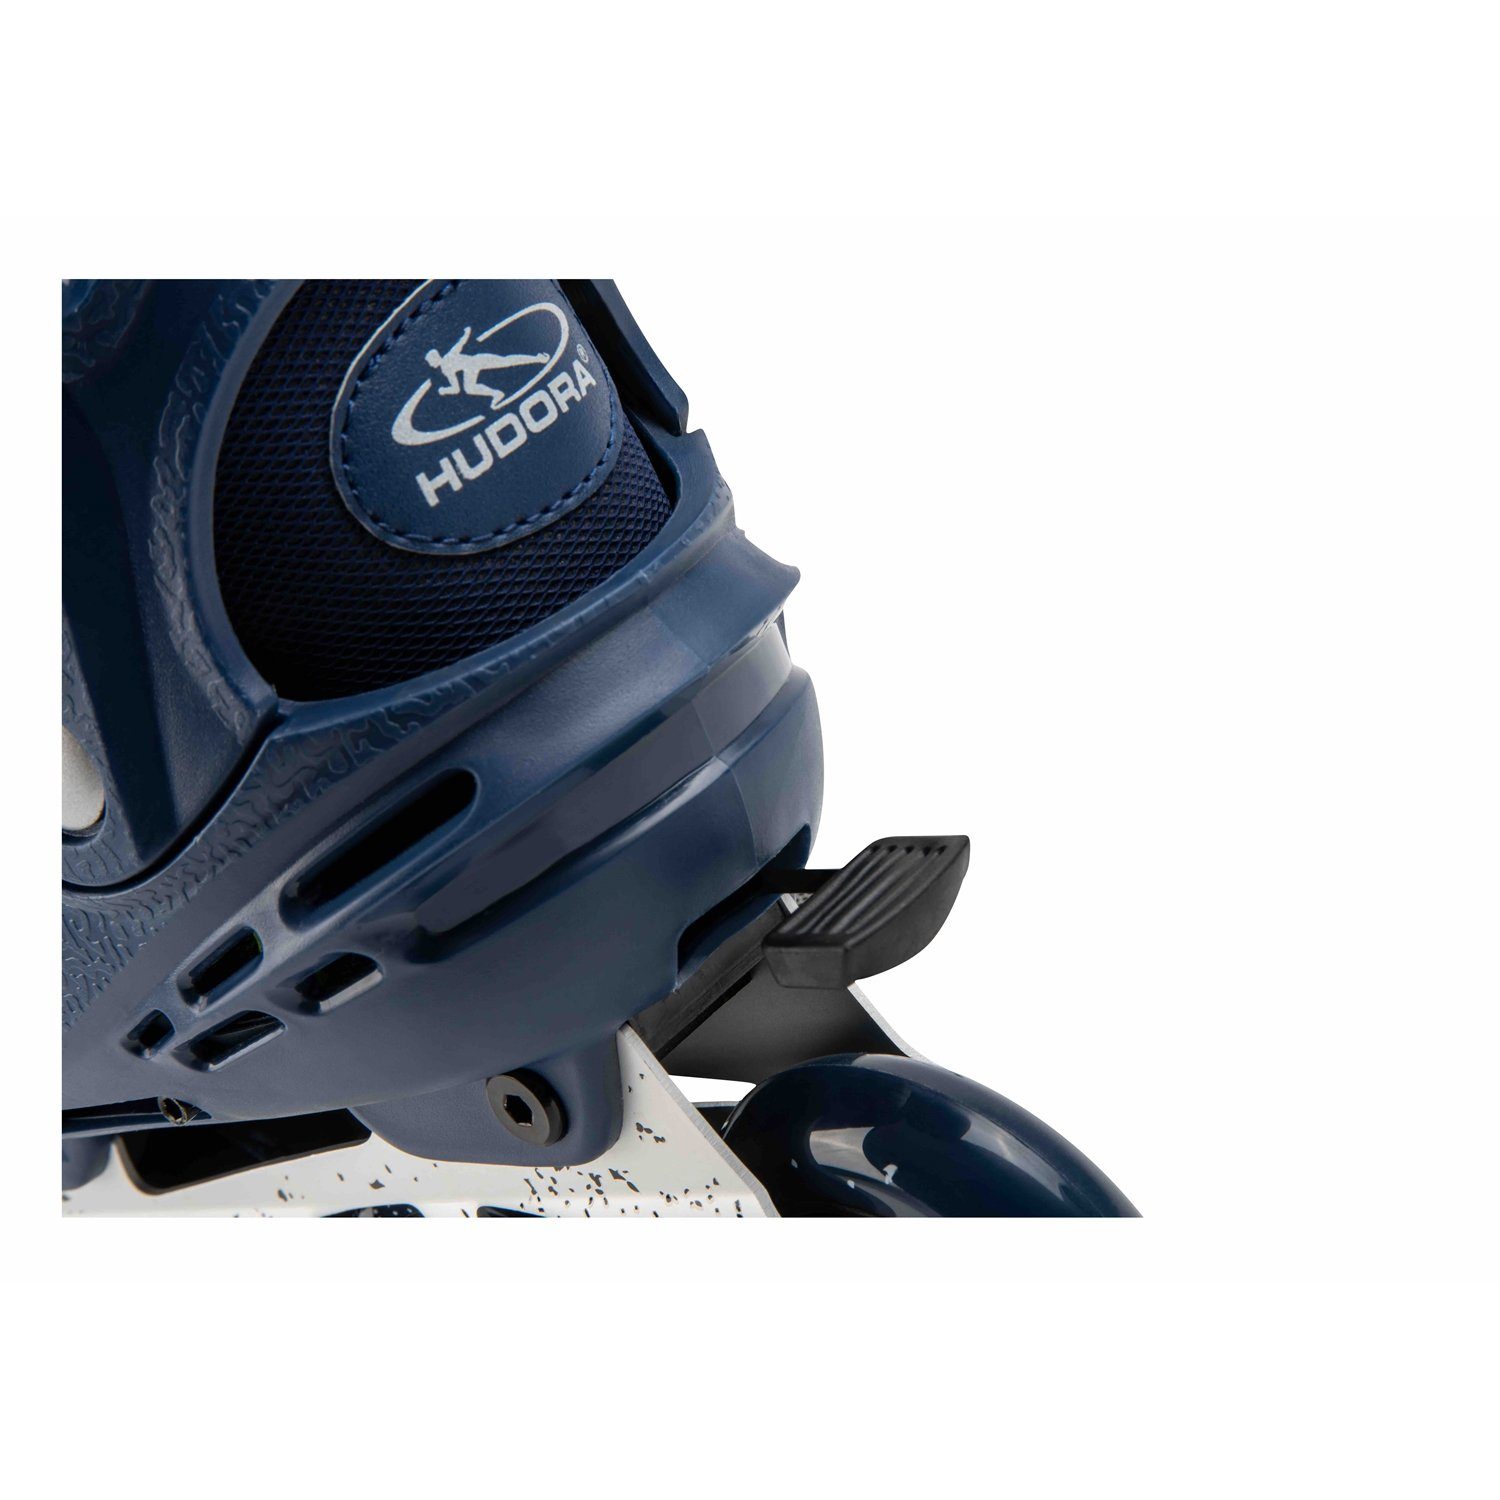 Hudora Scooter 28450 Inline Skates deep Comfort, Gr.29-34 Blue